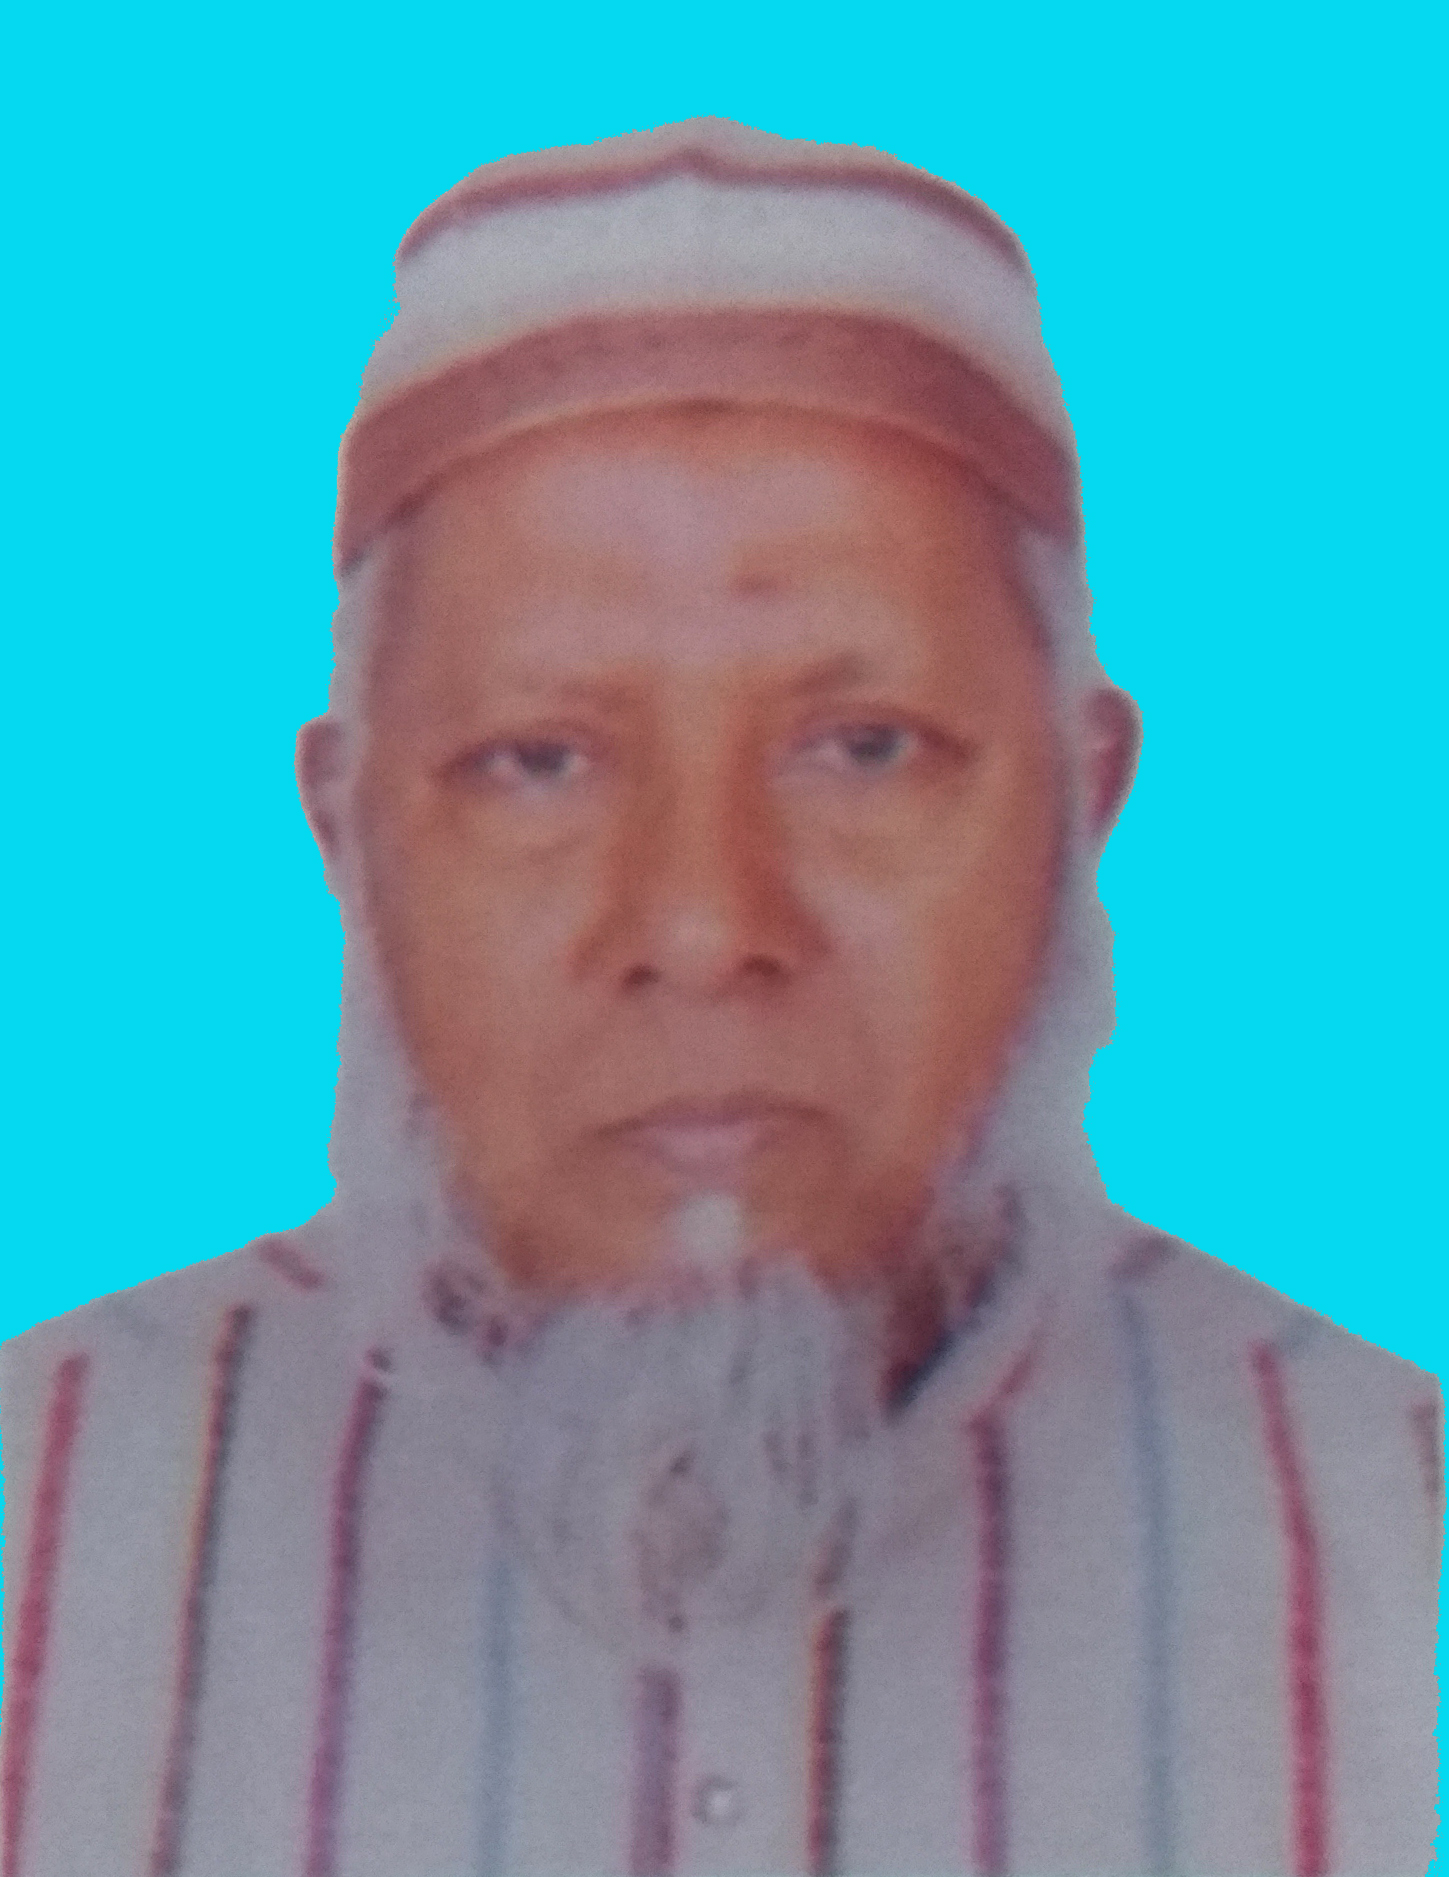 Abu Md. Al-Amin